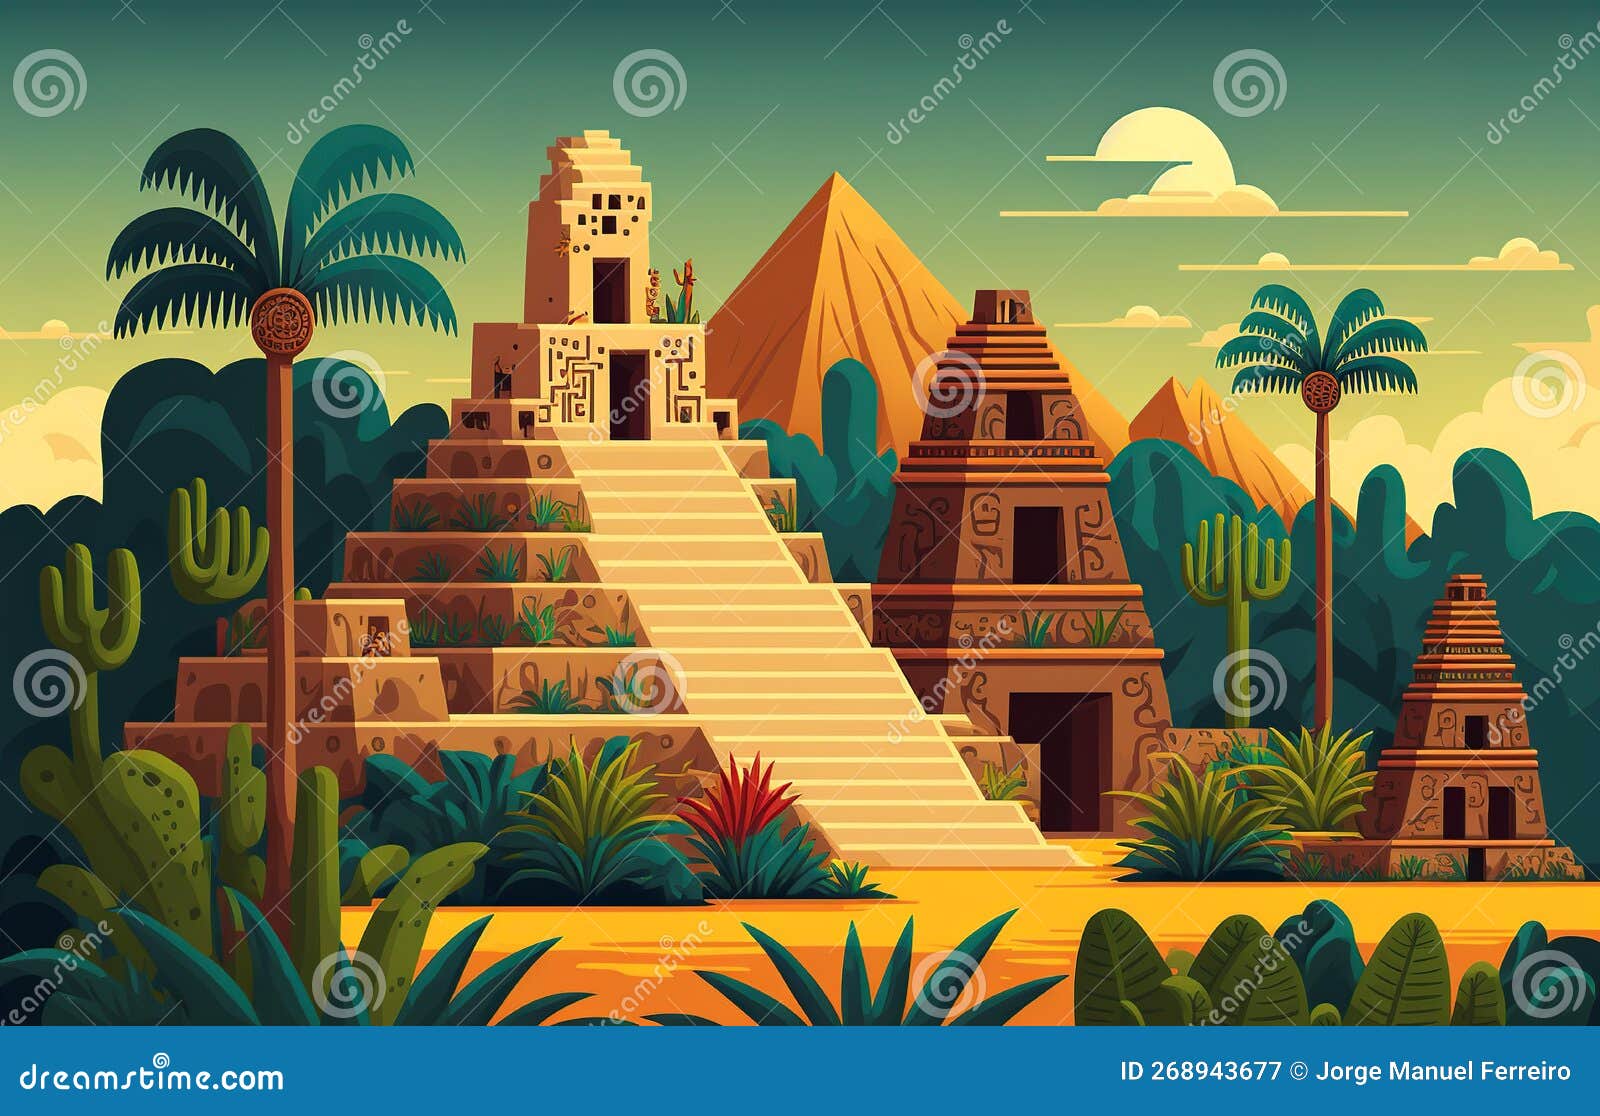 Templo Azteca Ilustraciones Stock, Vectores, Y Clipart – (1,718  Ilustraciones Stock)